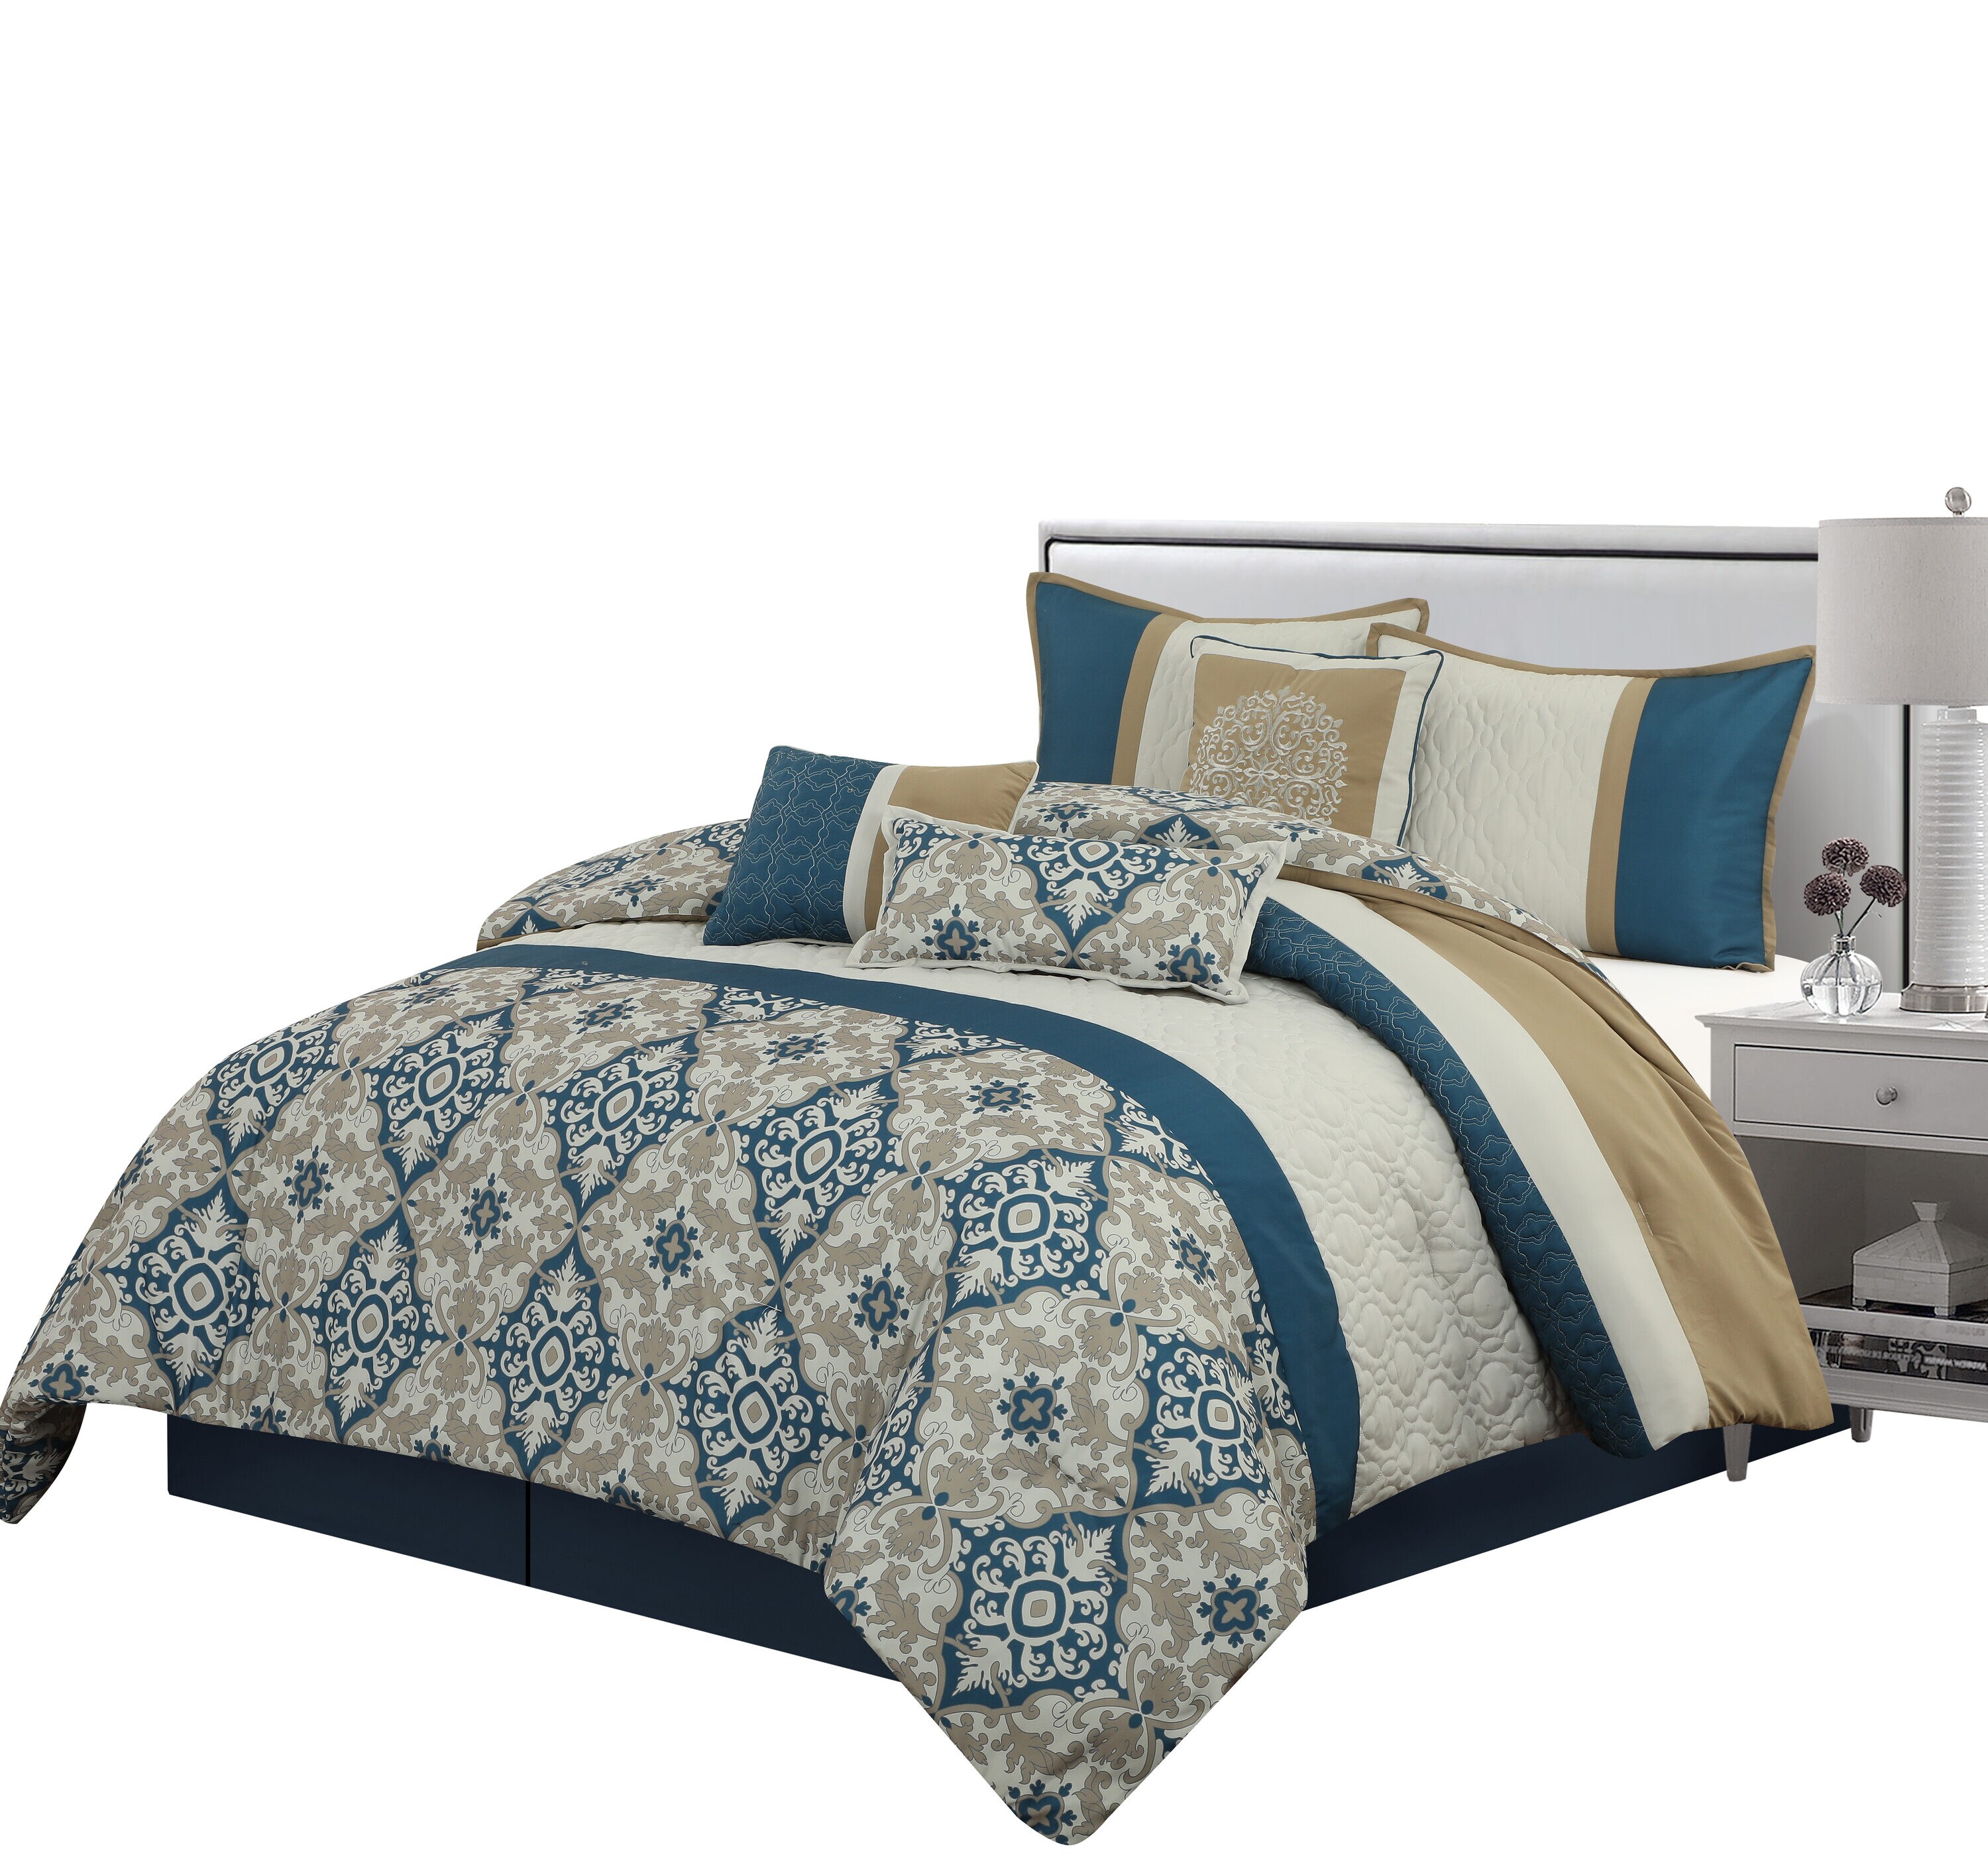 Grand Avenue Reina 7-Piece Blue/Beige Queen Comforter Set in the